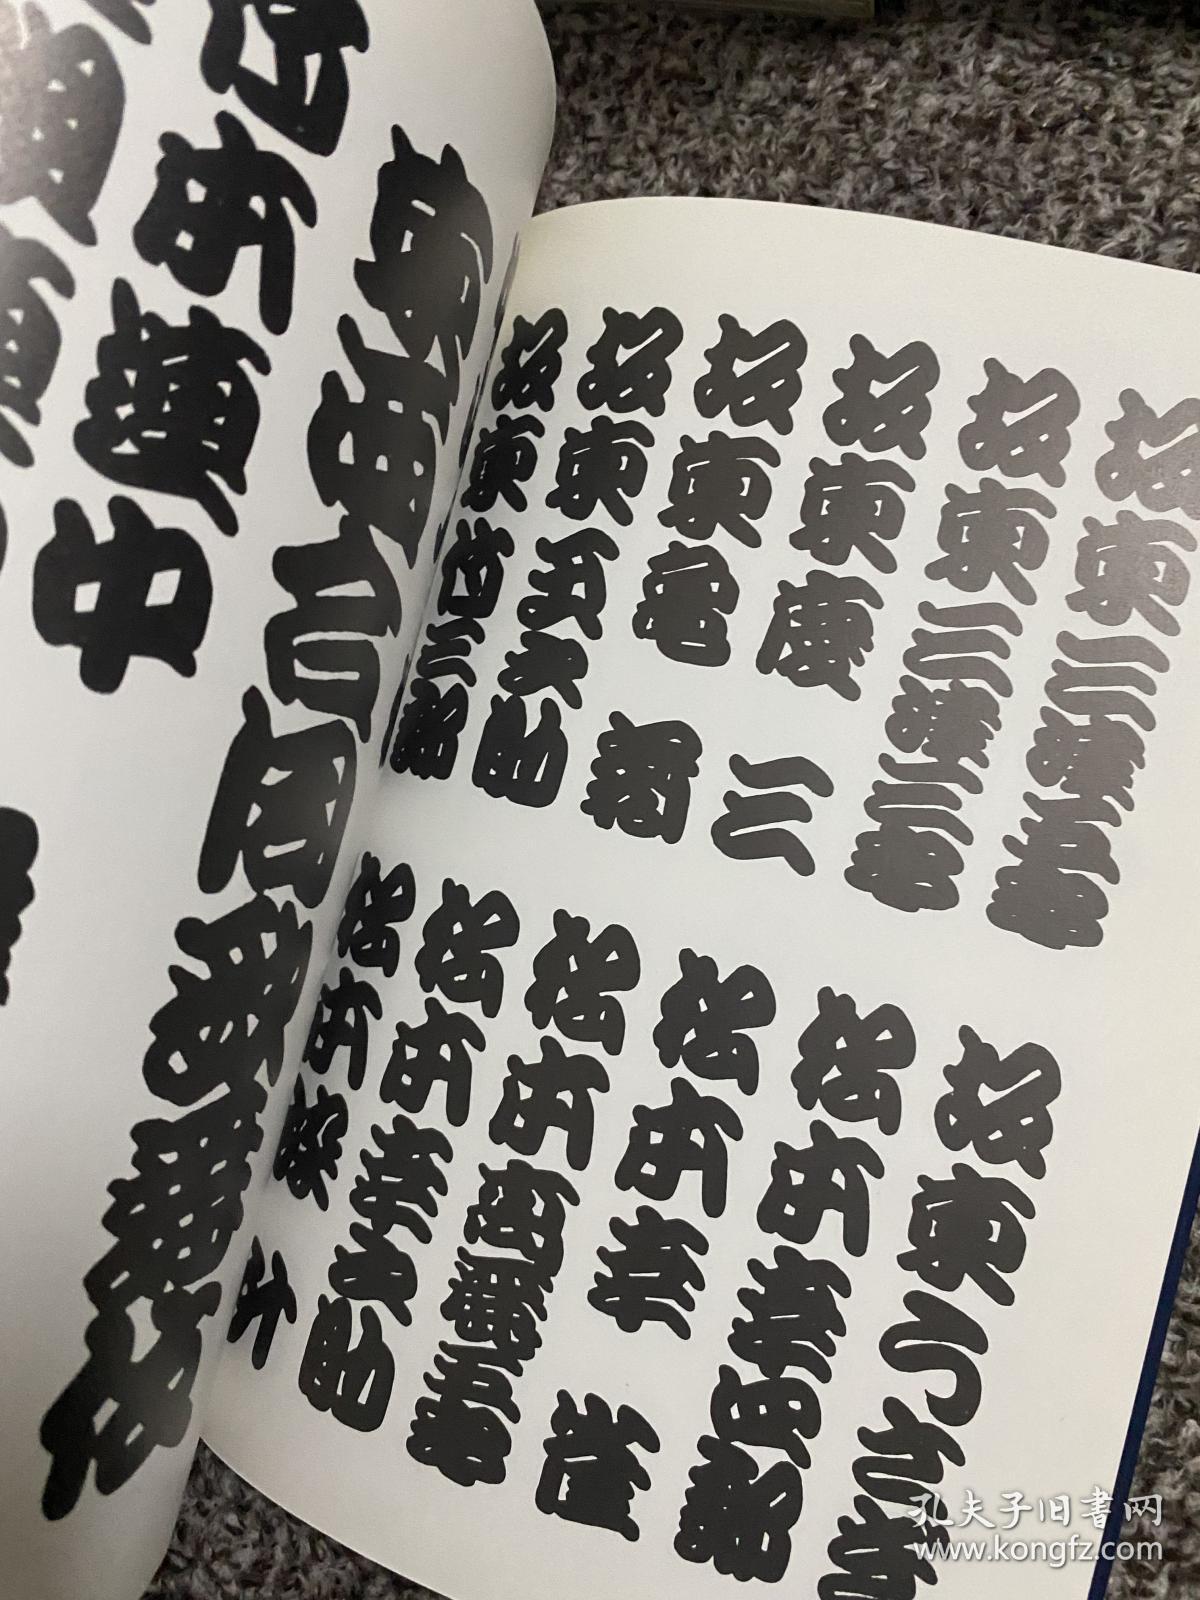 日本刺青参考书 字典